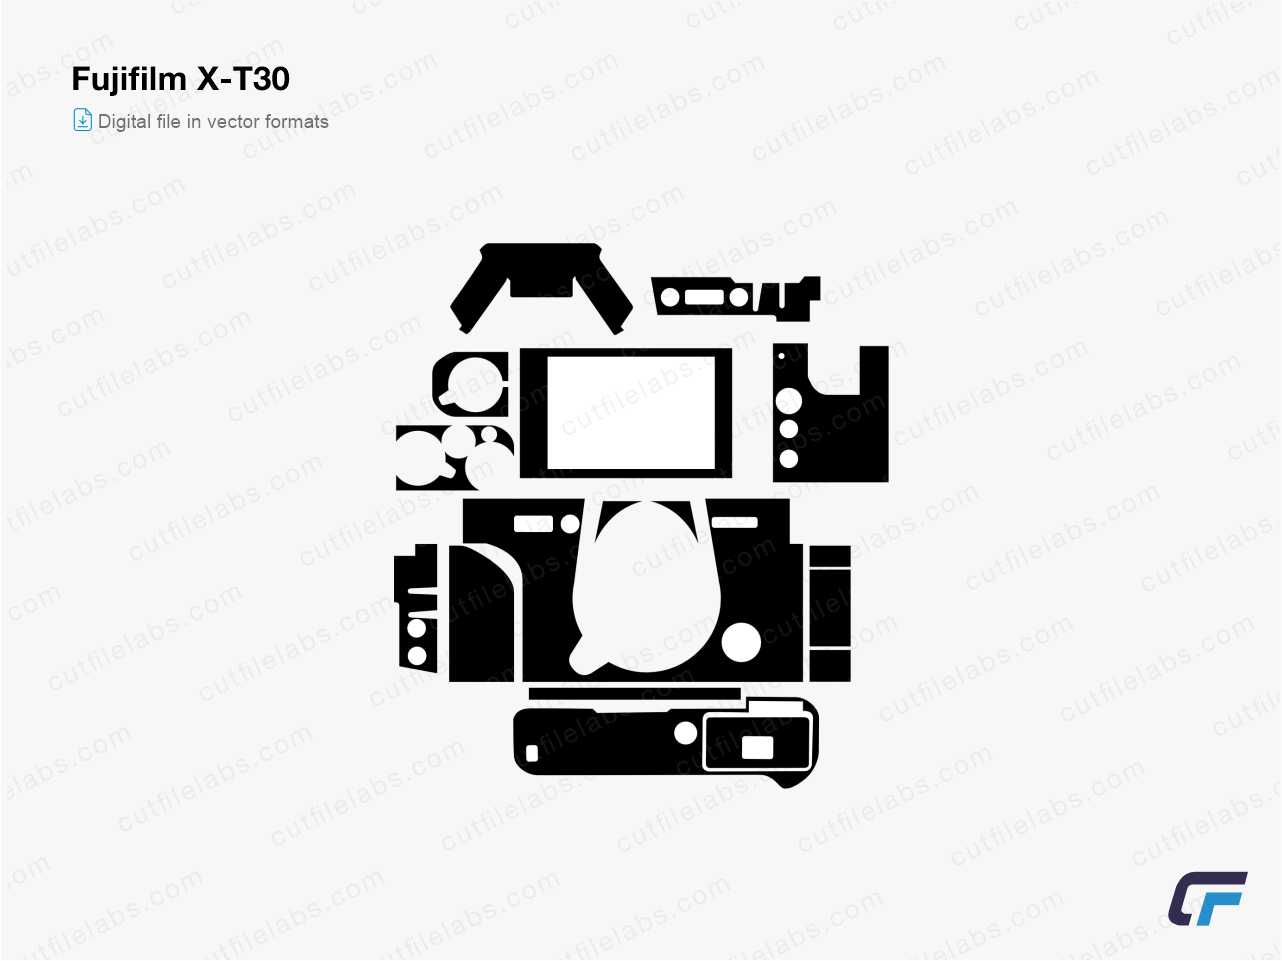 Fujifilm X-T30 (2019) Cut File Template